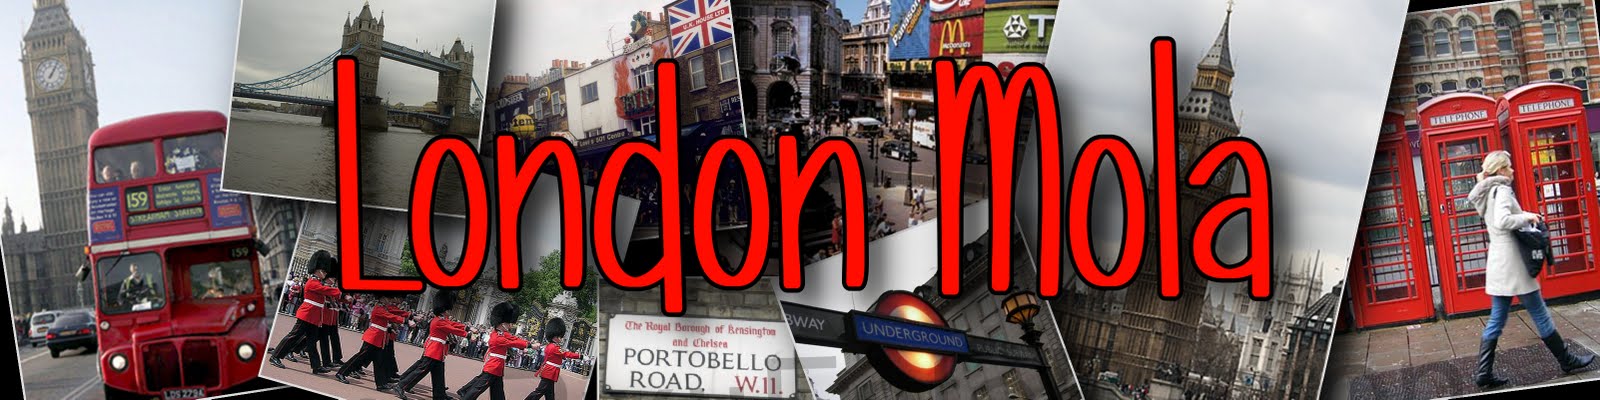 London Mola